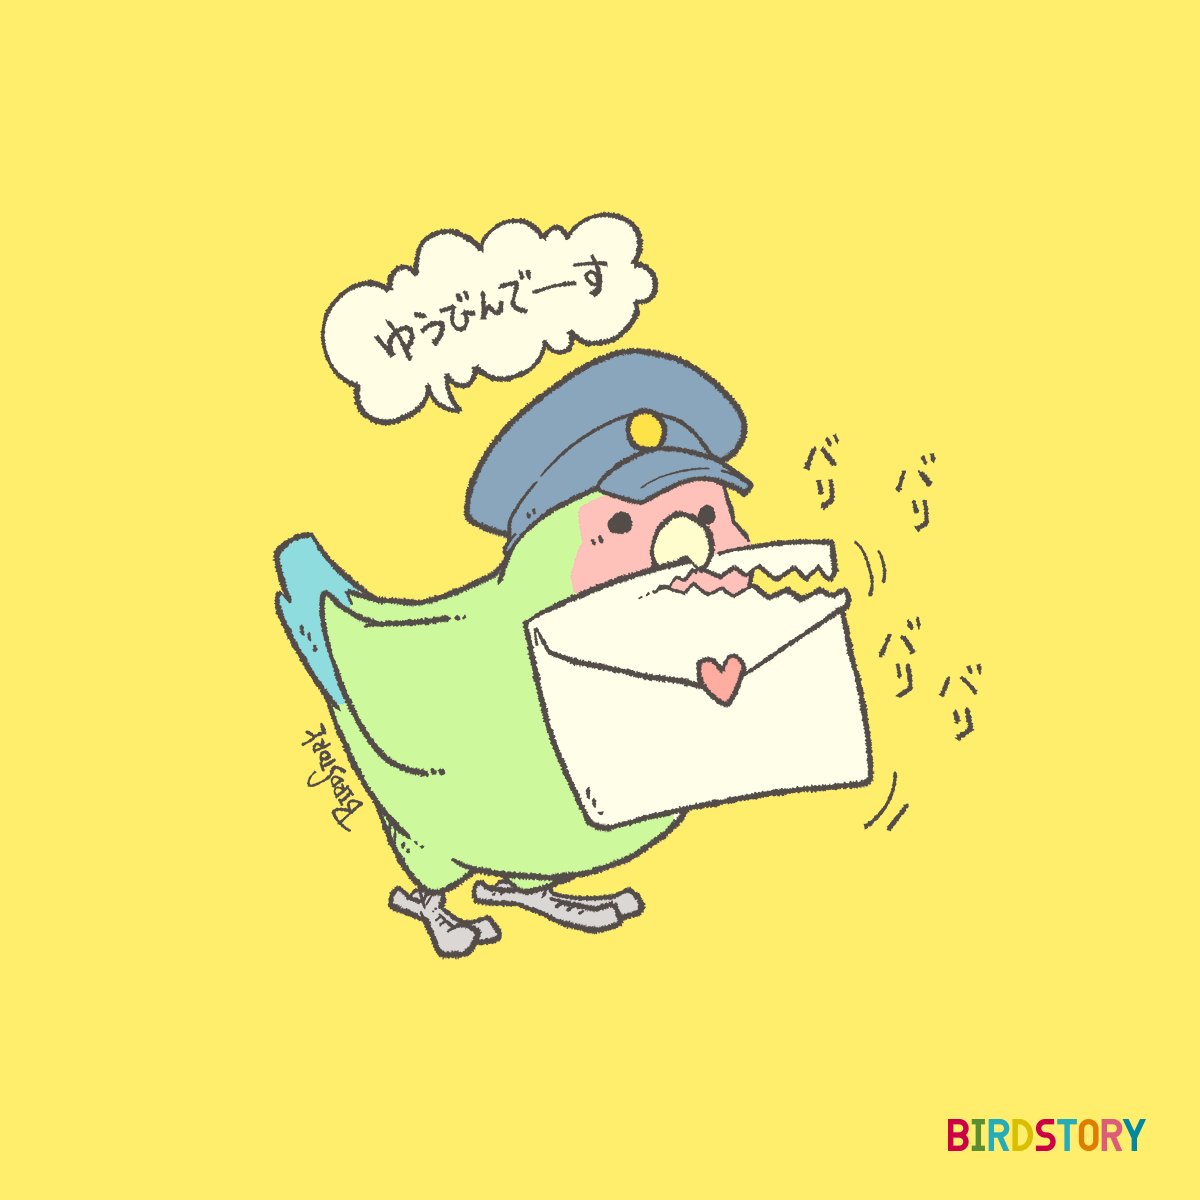 「おはようございます。本日は4月20日、郵政記念日とのことです#BIRDSTORY」|BIRDSTORYのイラスト